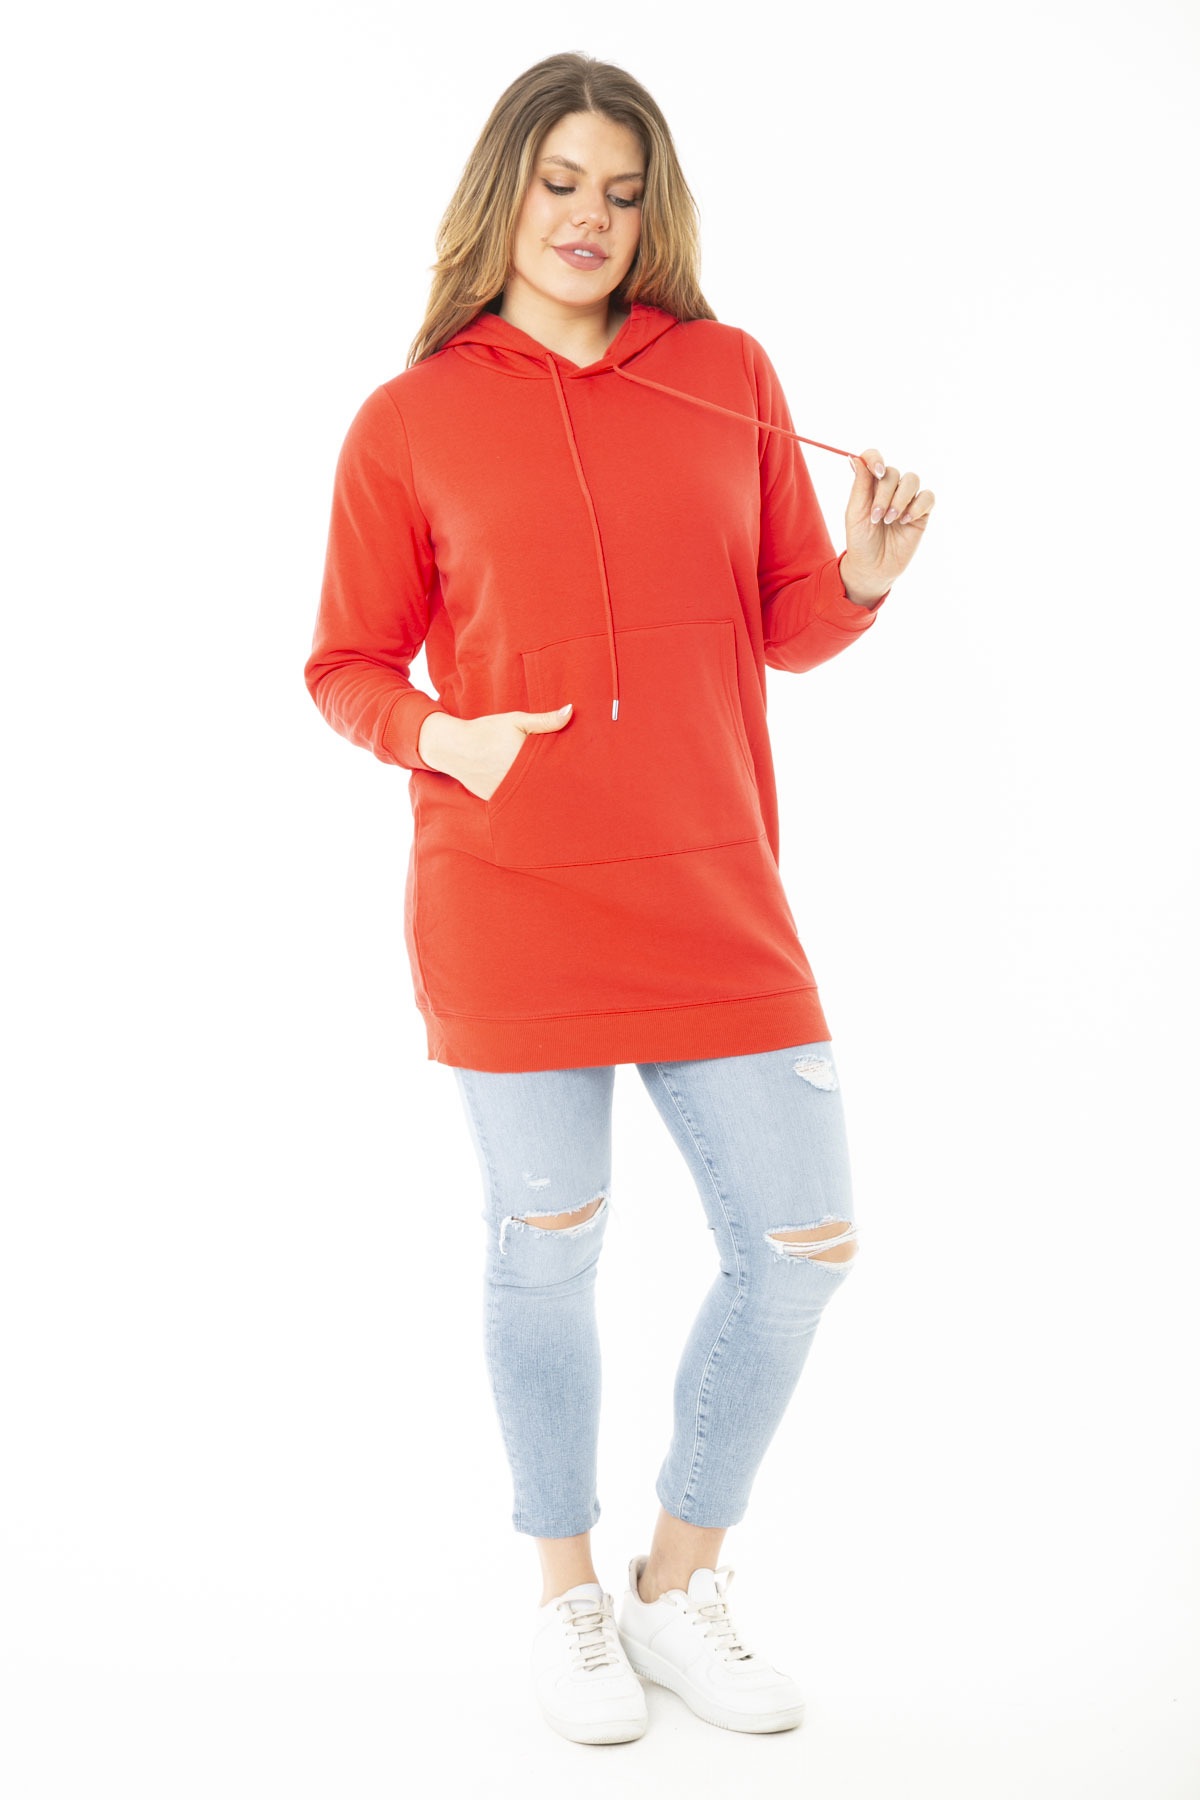 Levně Şans Women's Plus Size Red Two Threads Hooded Sweatshirt